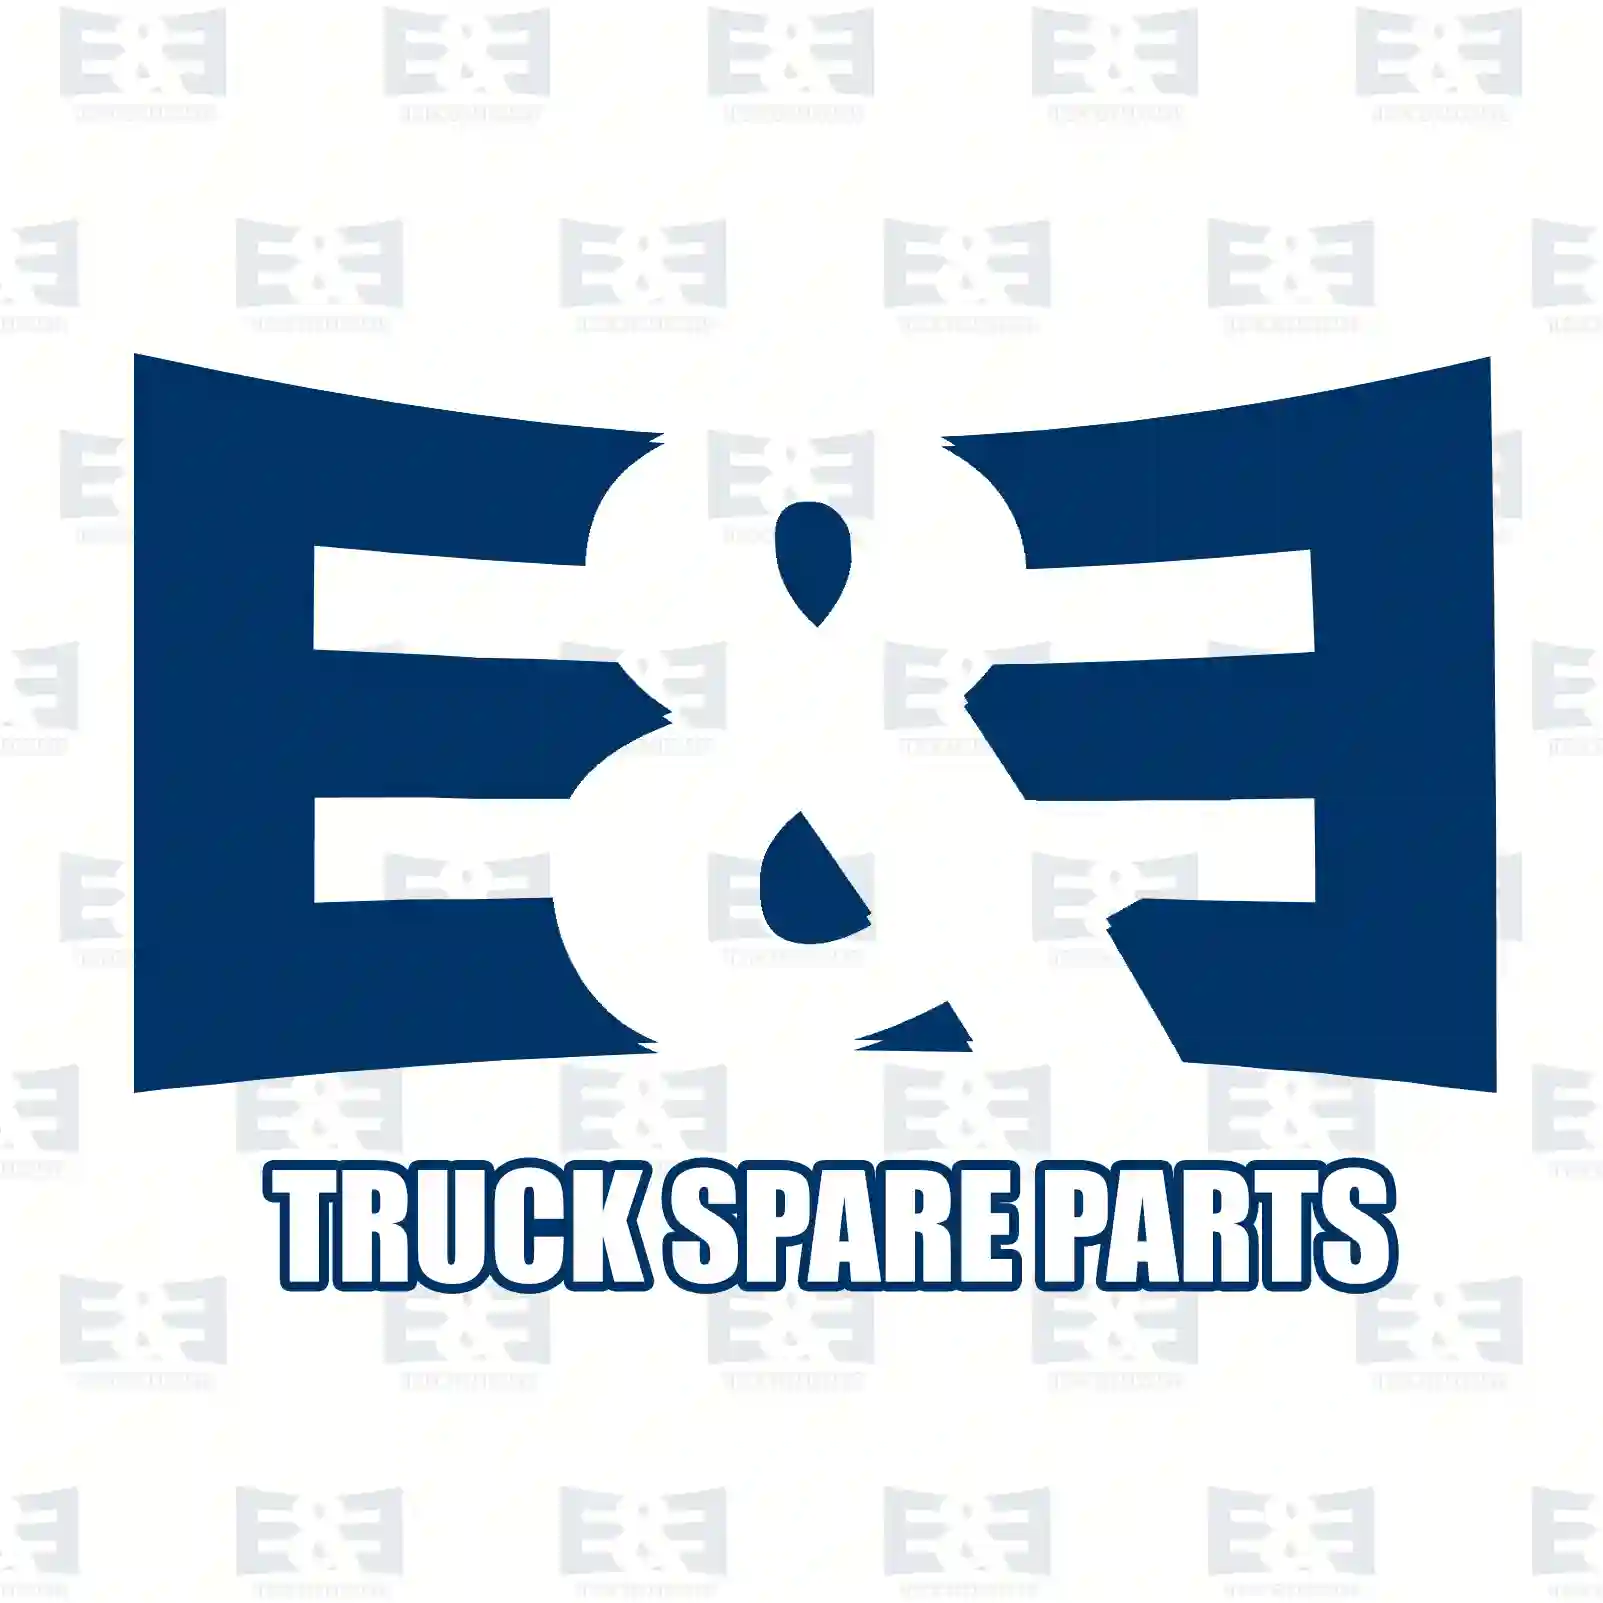 Cover, headlamp, right, 2E2297844, 7810R0, 7810W9, 735425380, 7810R0, 7810W9 ||  2E2297844 E&E Truck Spare Parts | Truck Spare Parts, Auotomotive Spare Parts Cover, headlamp, right, 2E2297844, 7810R0, 7810W9, 735425380, 7810R0, 7810W9 ||  2E2297844 E&E Truck Spare Parts | Truck Spare Parts, Auotomotive Spare Parts